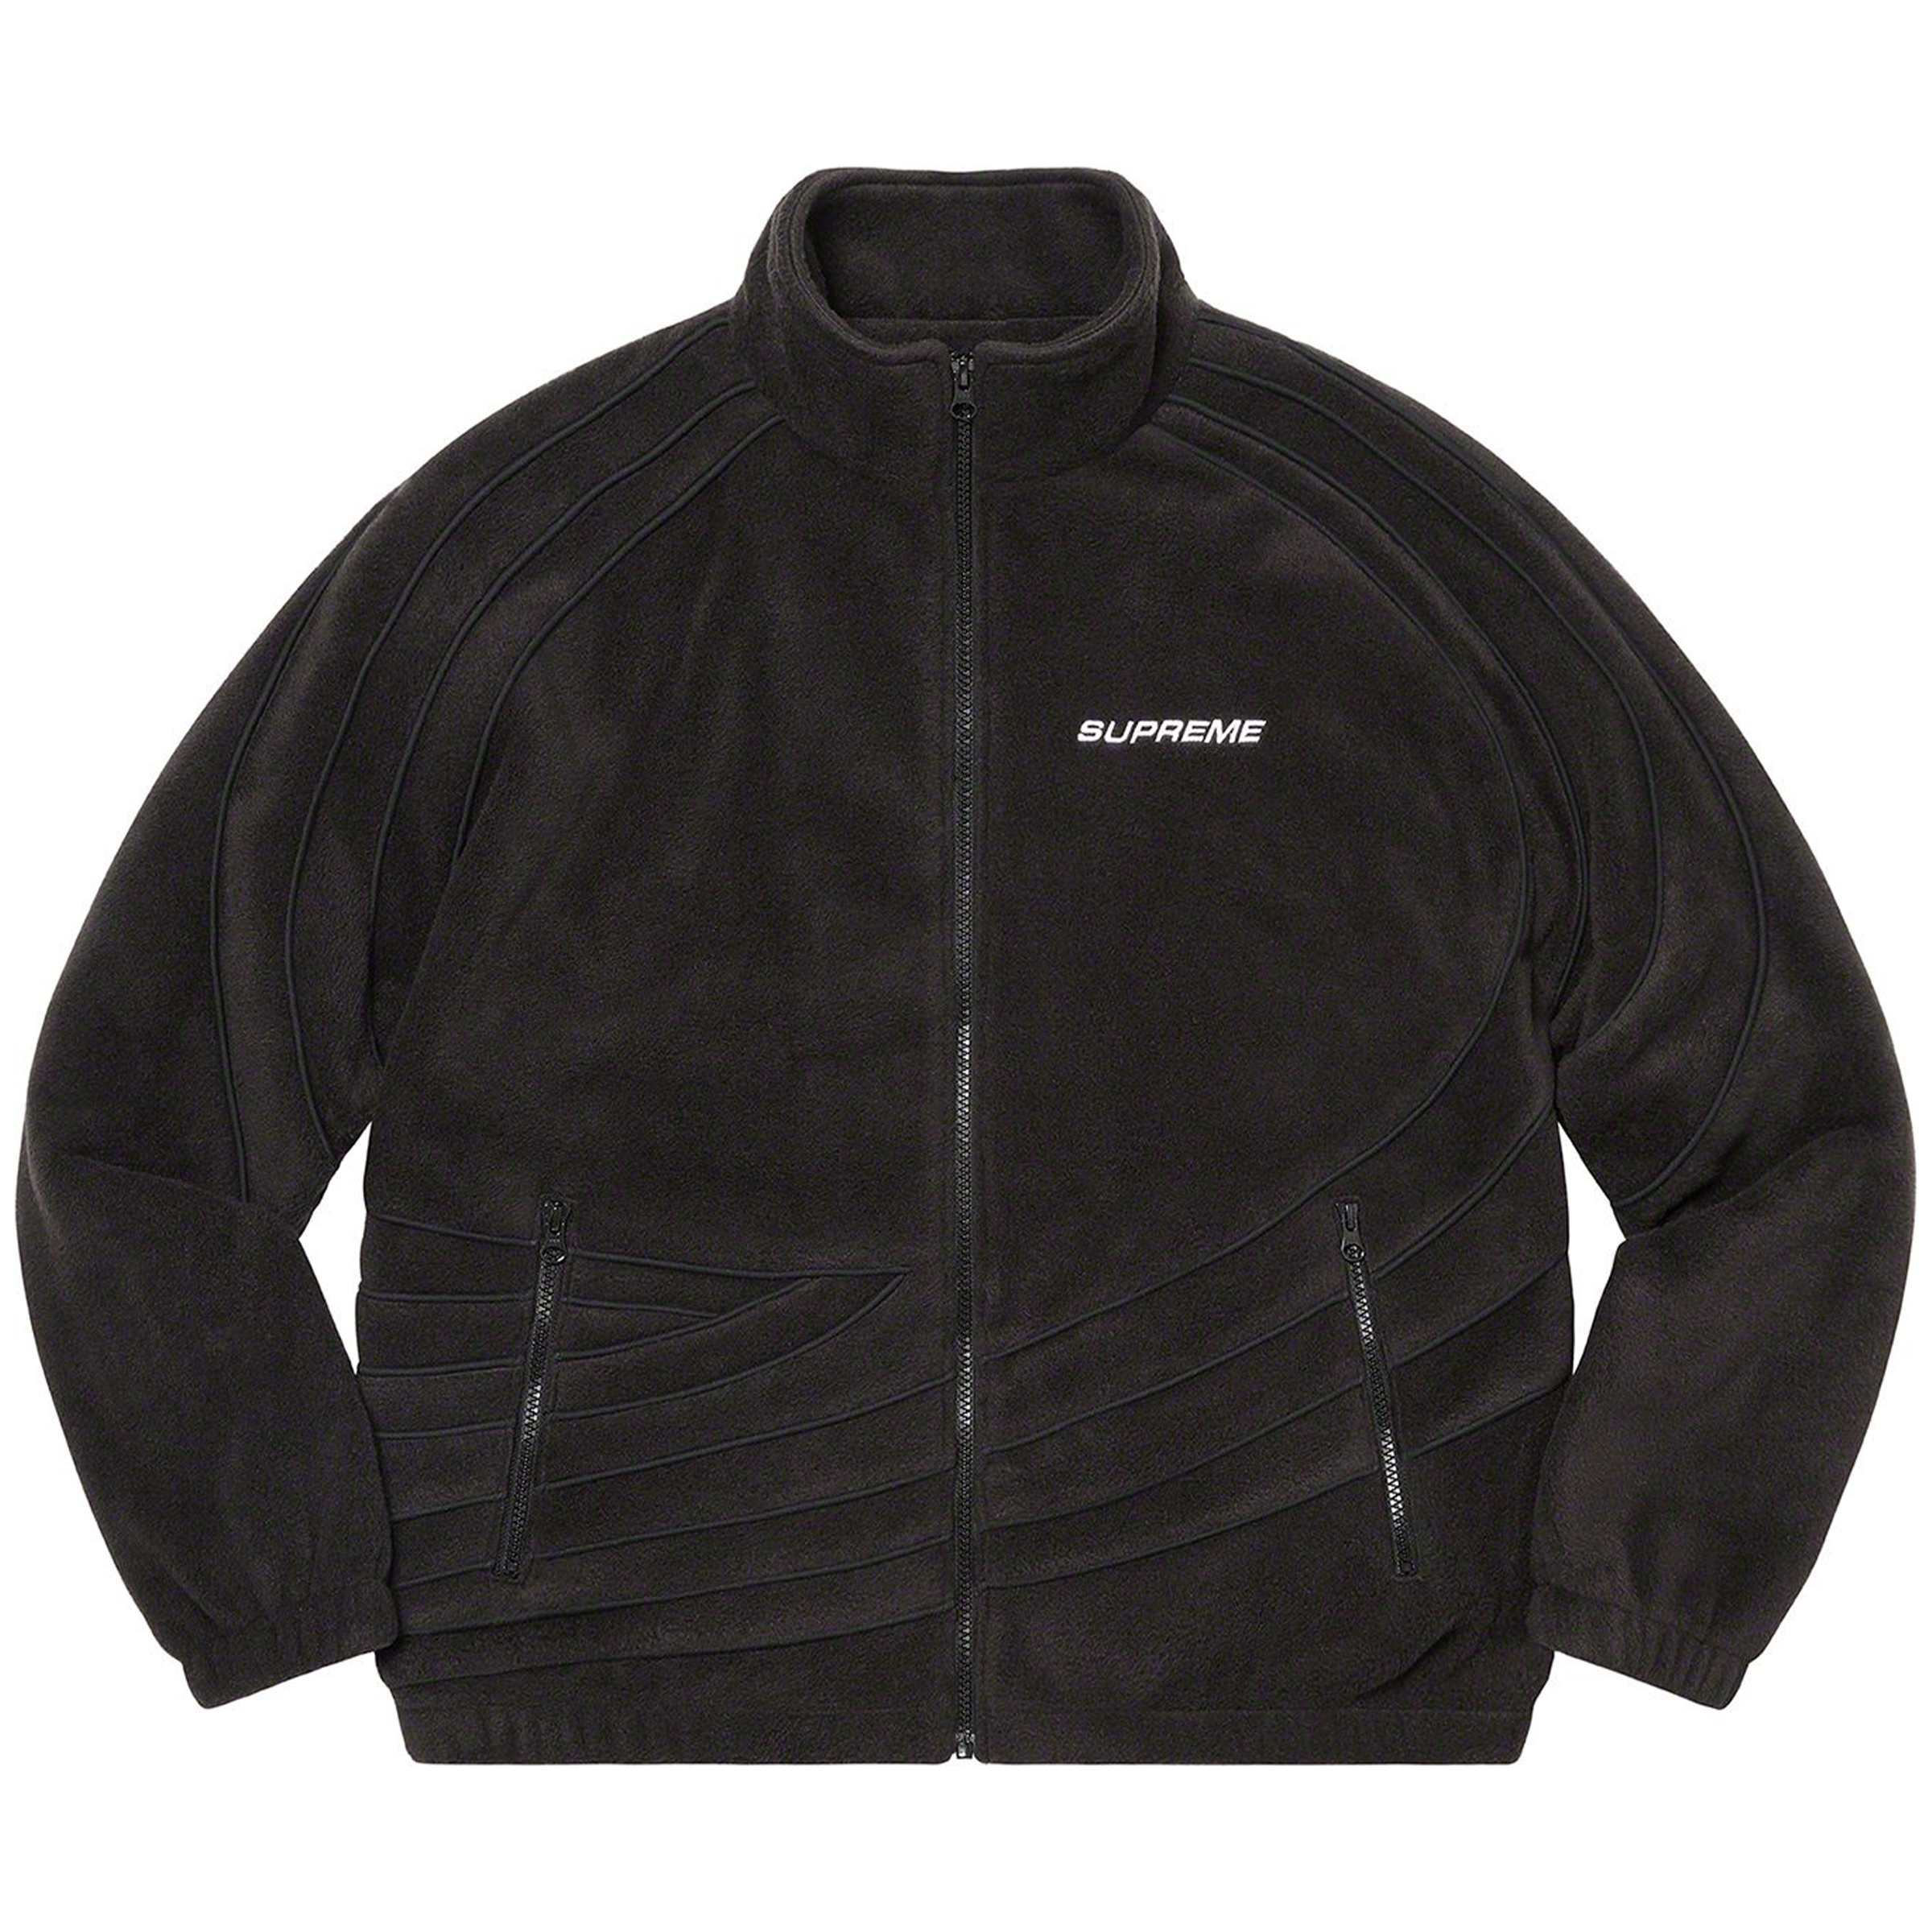 Supreme “Racing” - Fleece Jacket